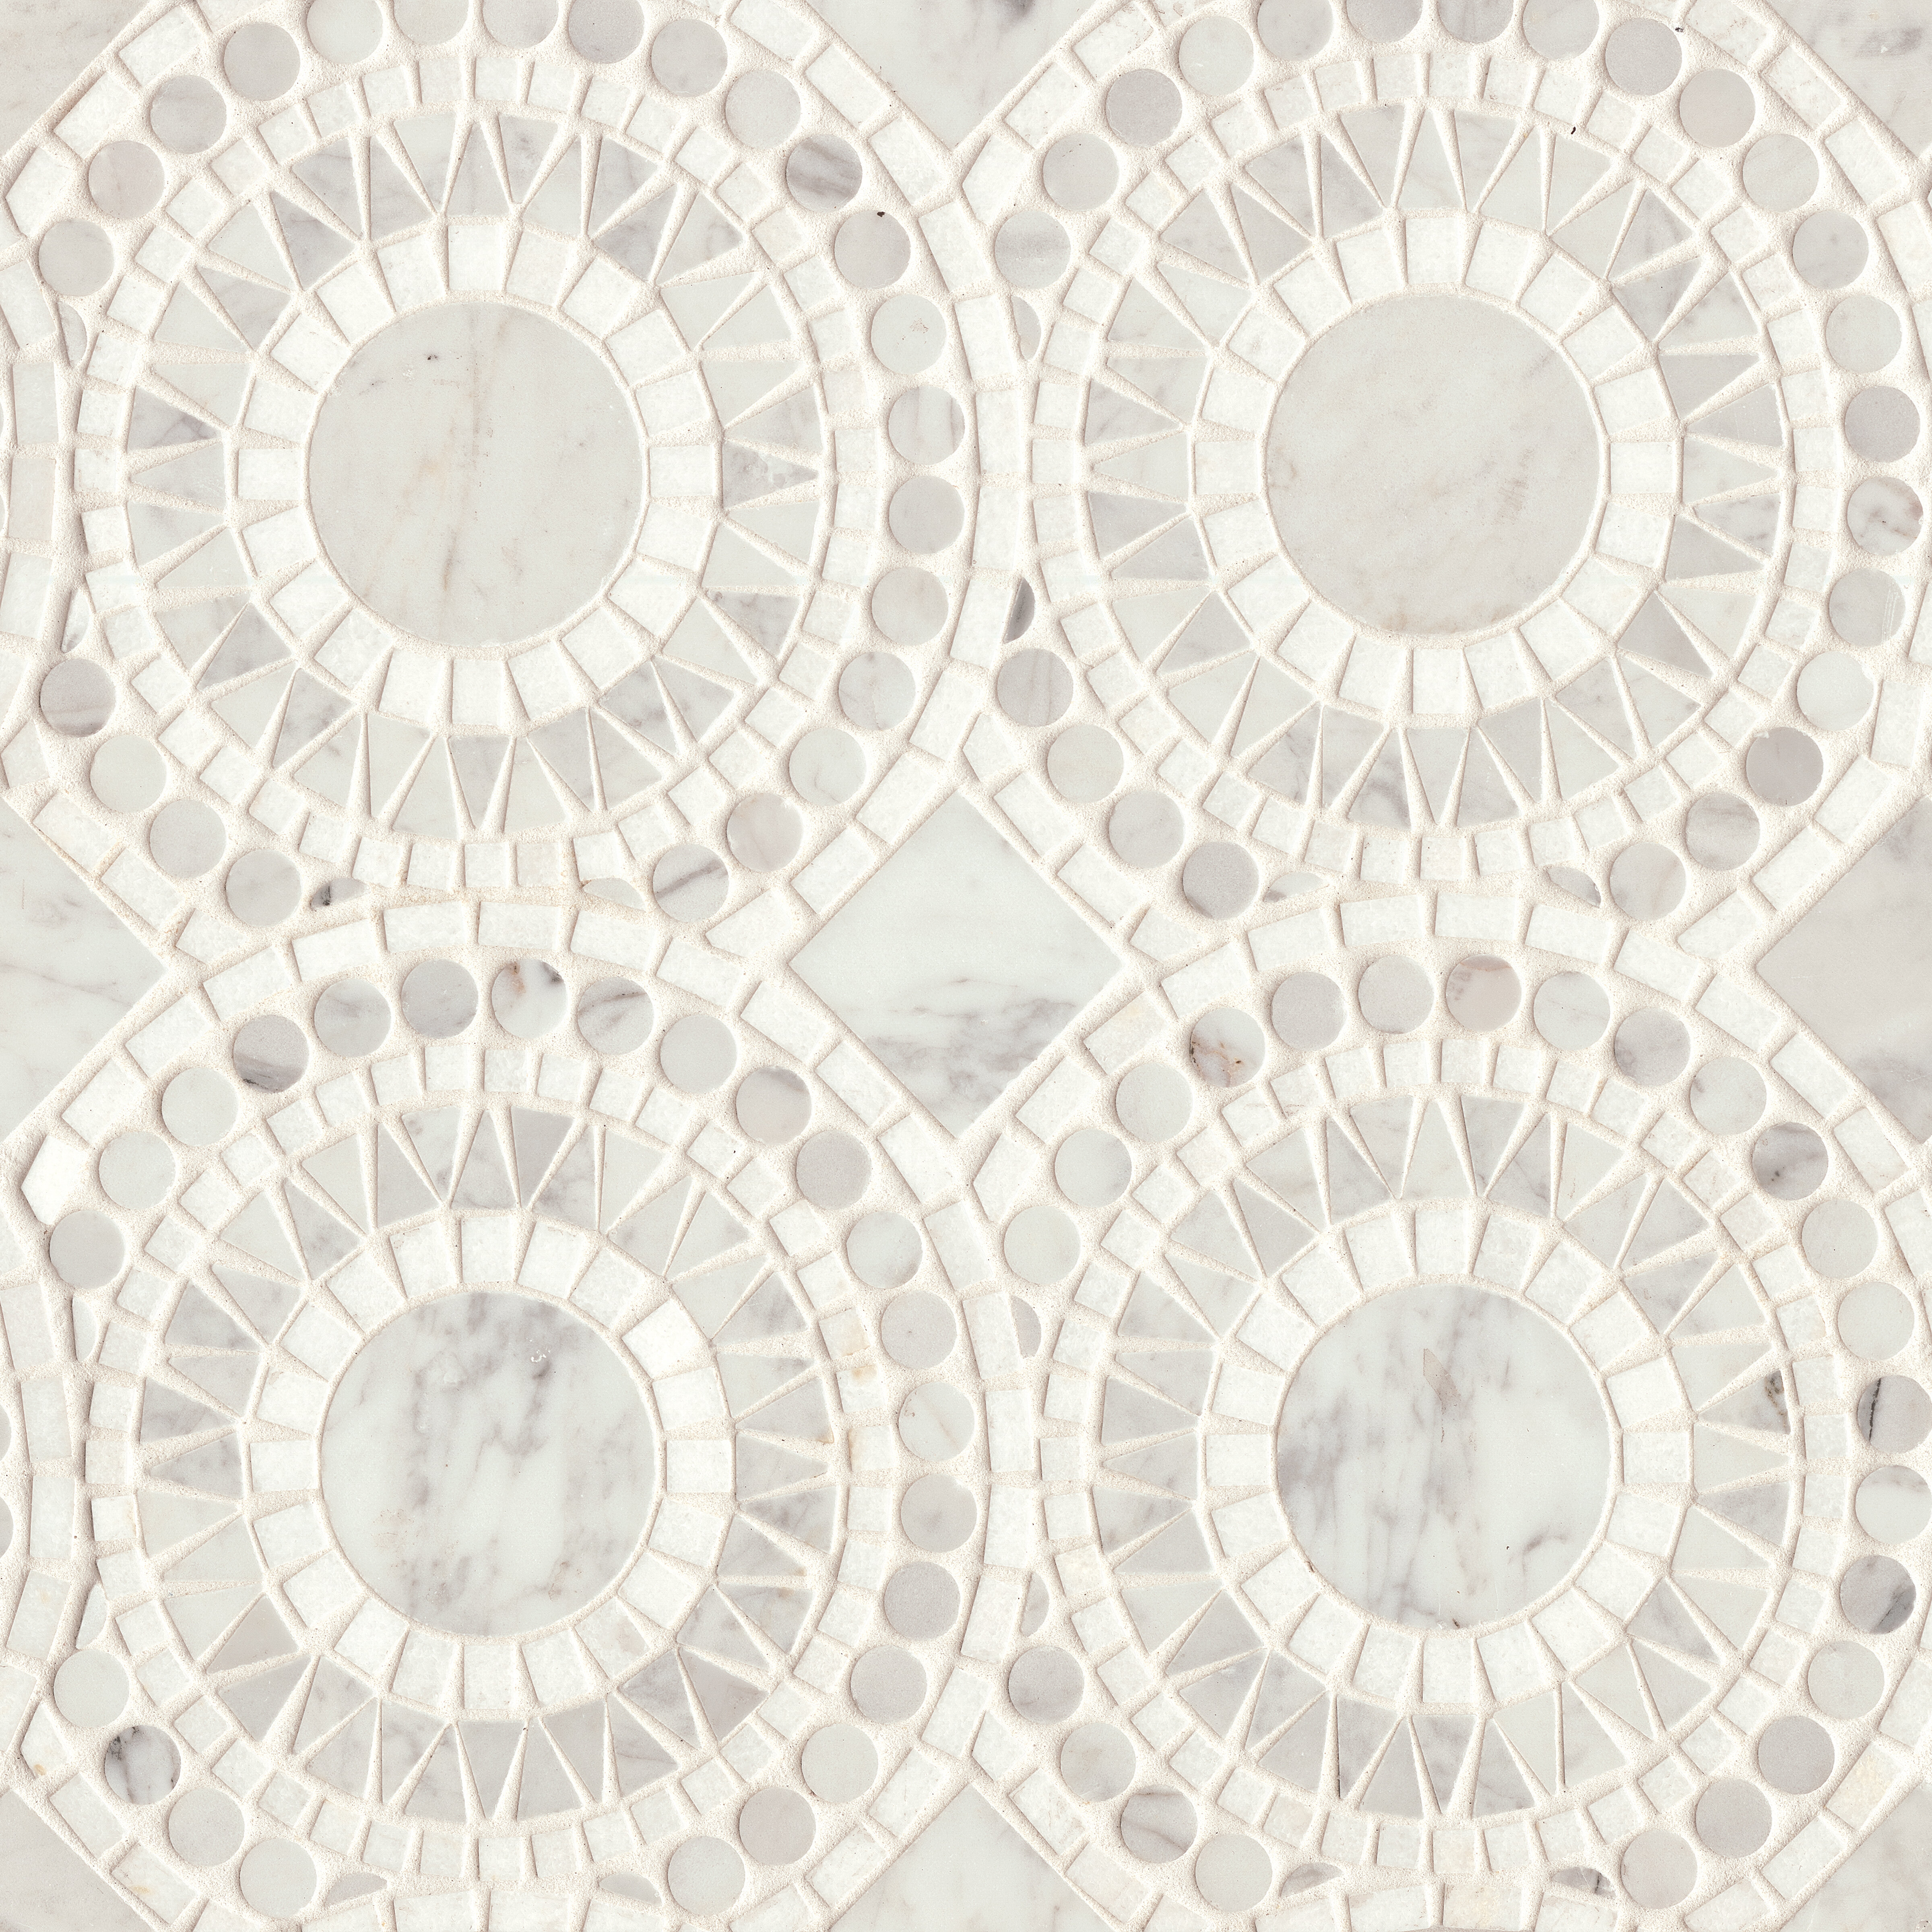 Bedrosians Gallerie Floral Mosaic Tile & Reviews